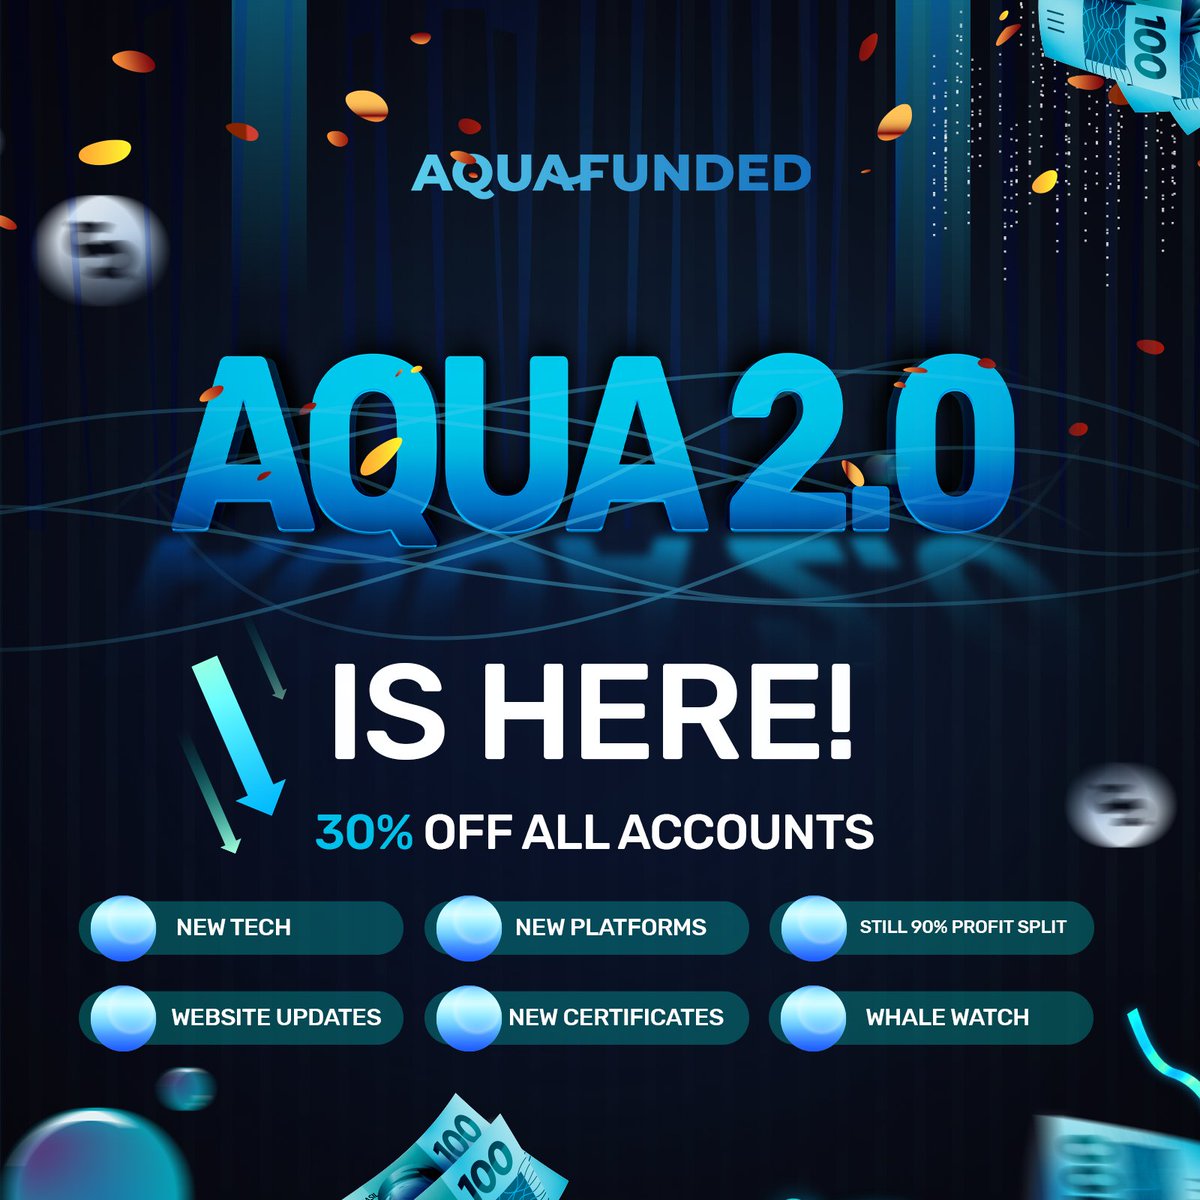 AQUA 2.0 IS HERE 💙 THE NEW WAVE 🌊 aquafunded.com/?el=x